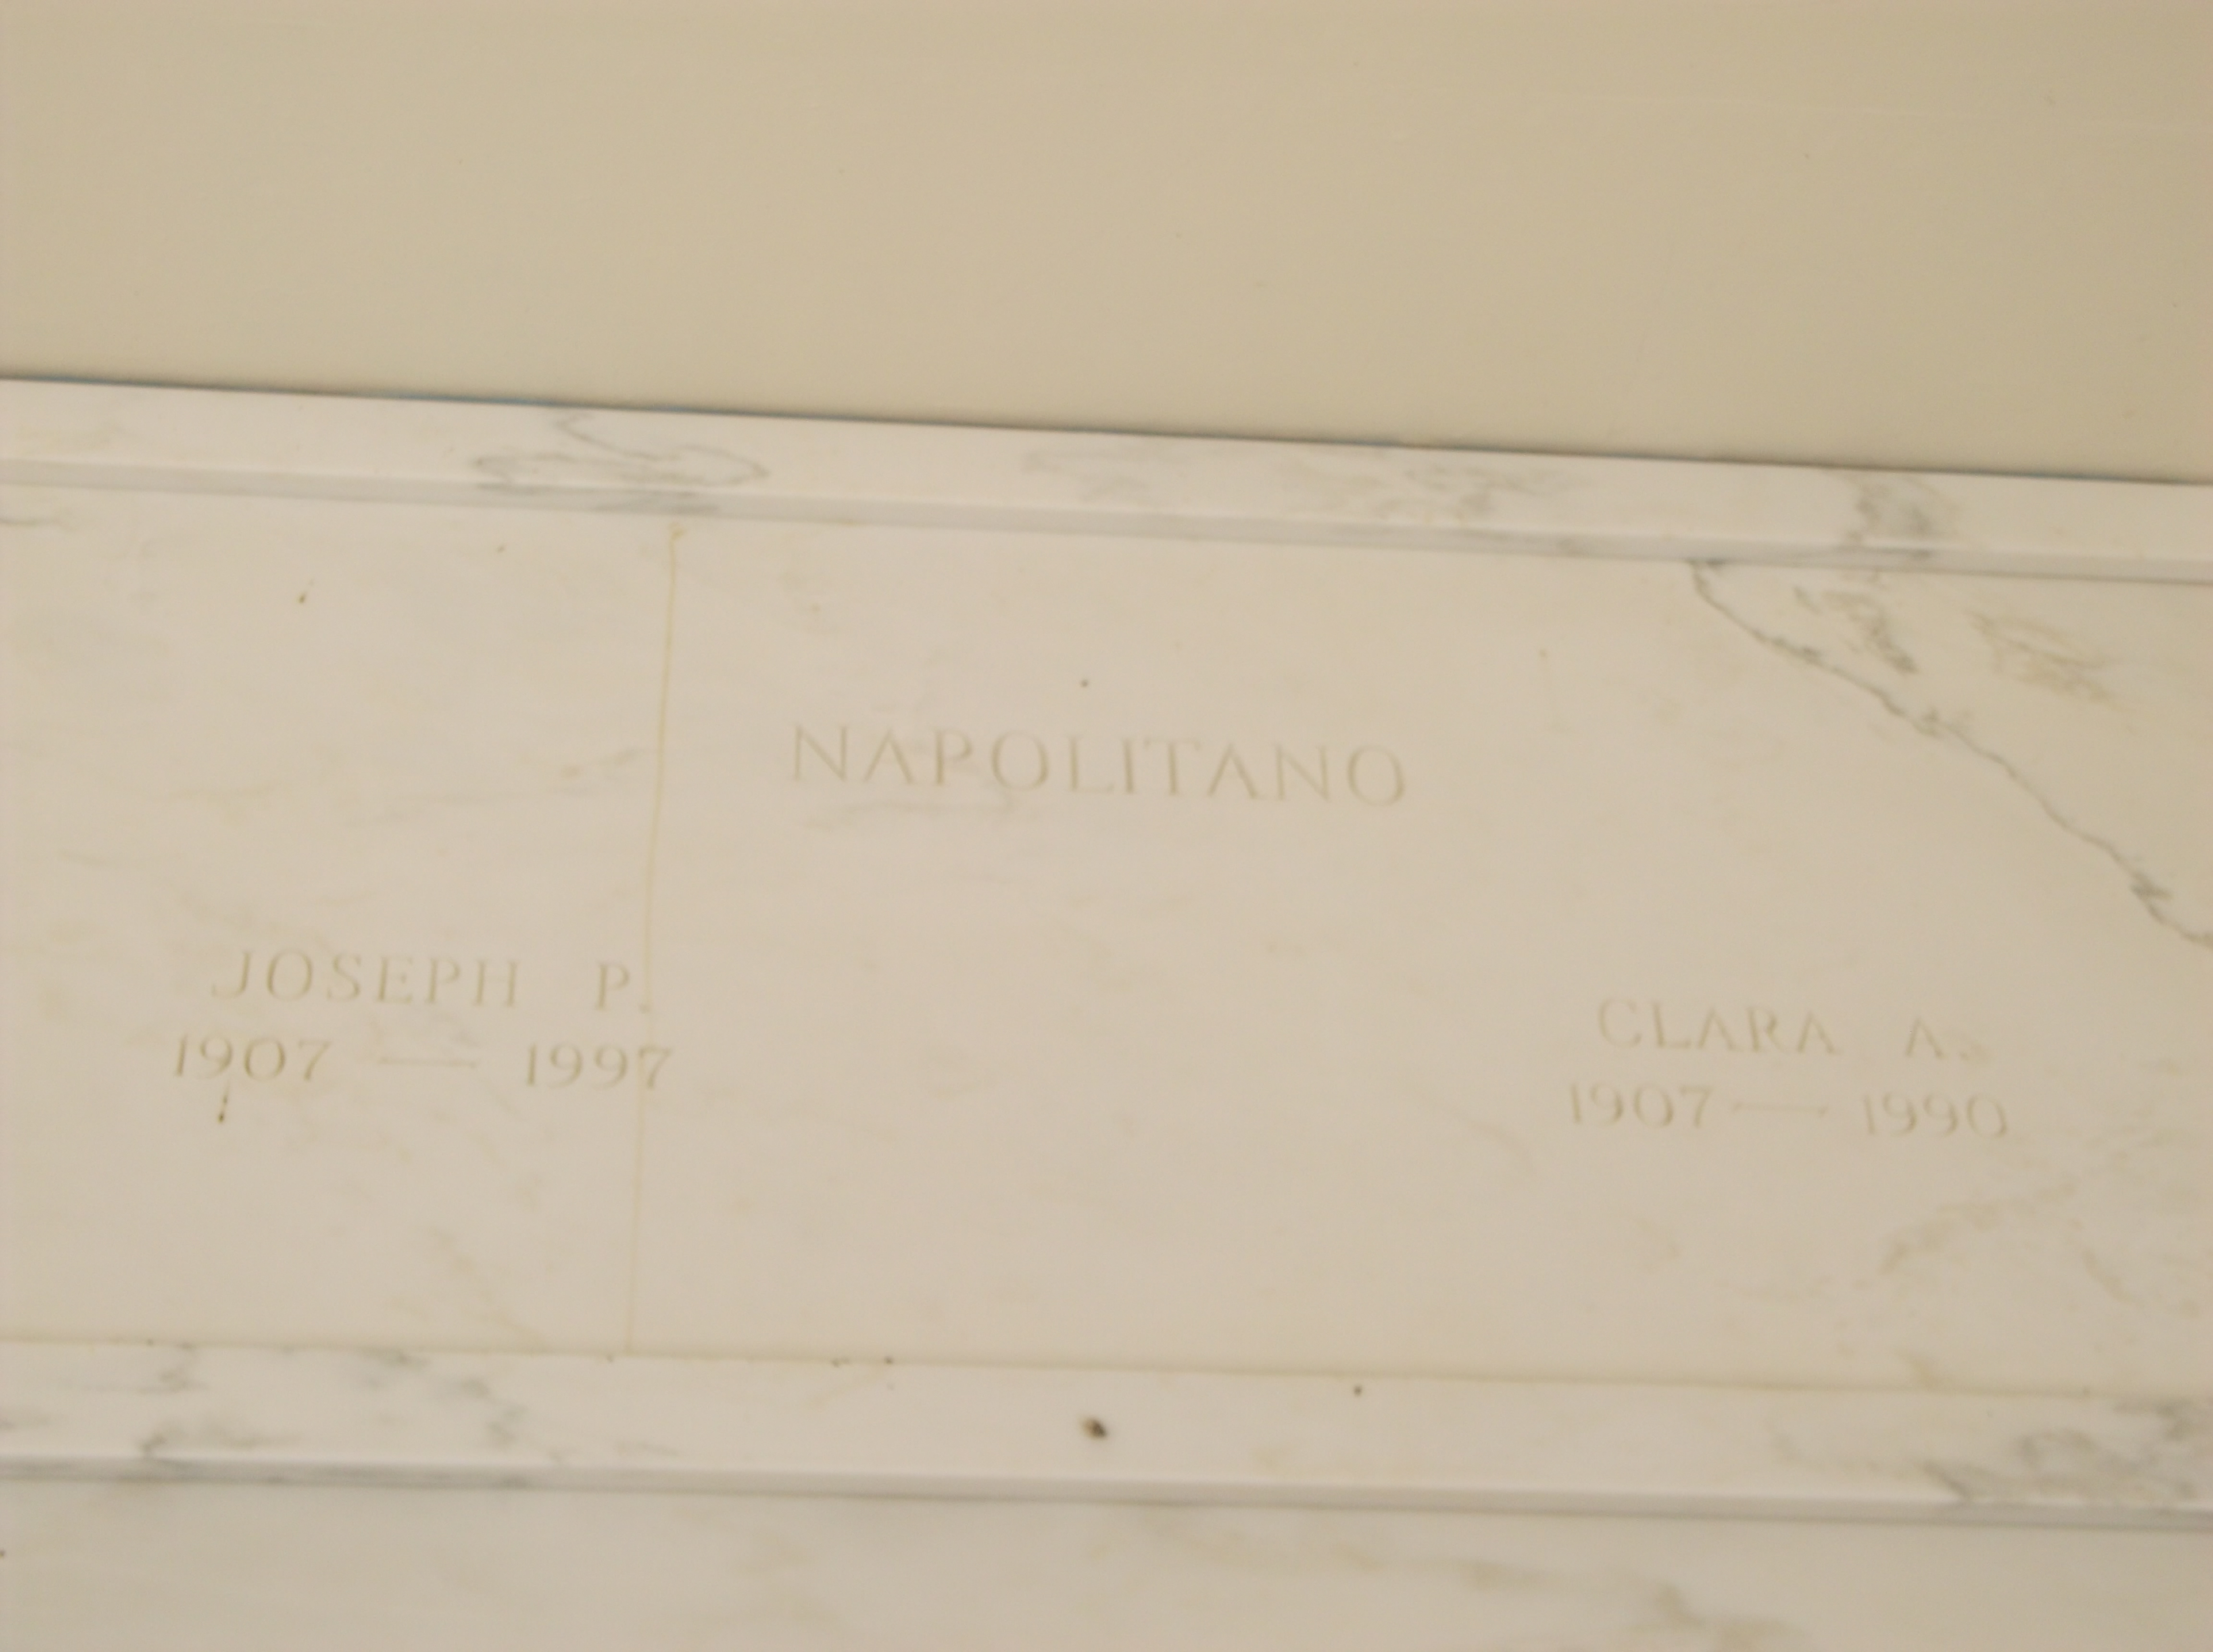 Joseph P Napolitano